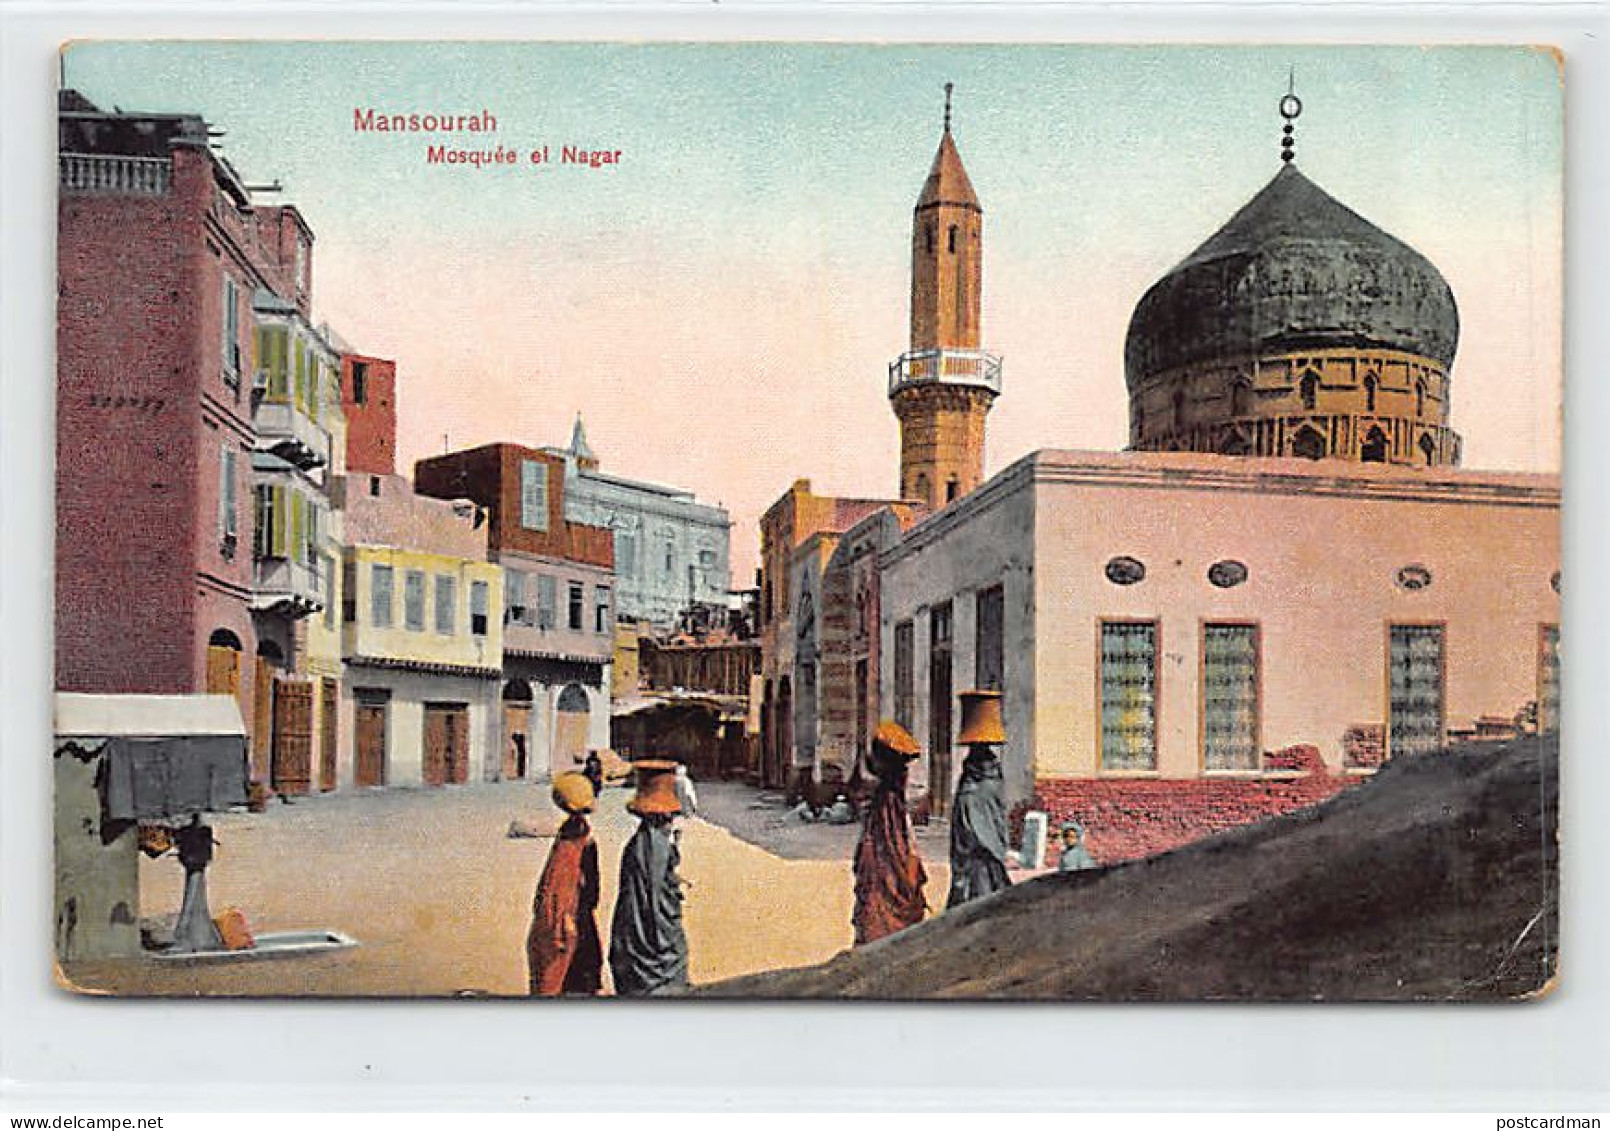 Egypt - MANSOURA - Sidi Muhamed El-Nagar Mosque - Publ. Dr. Trenkler E. & A. Sakakini - Mansourah